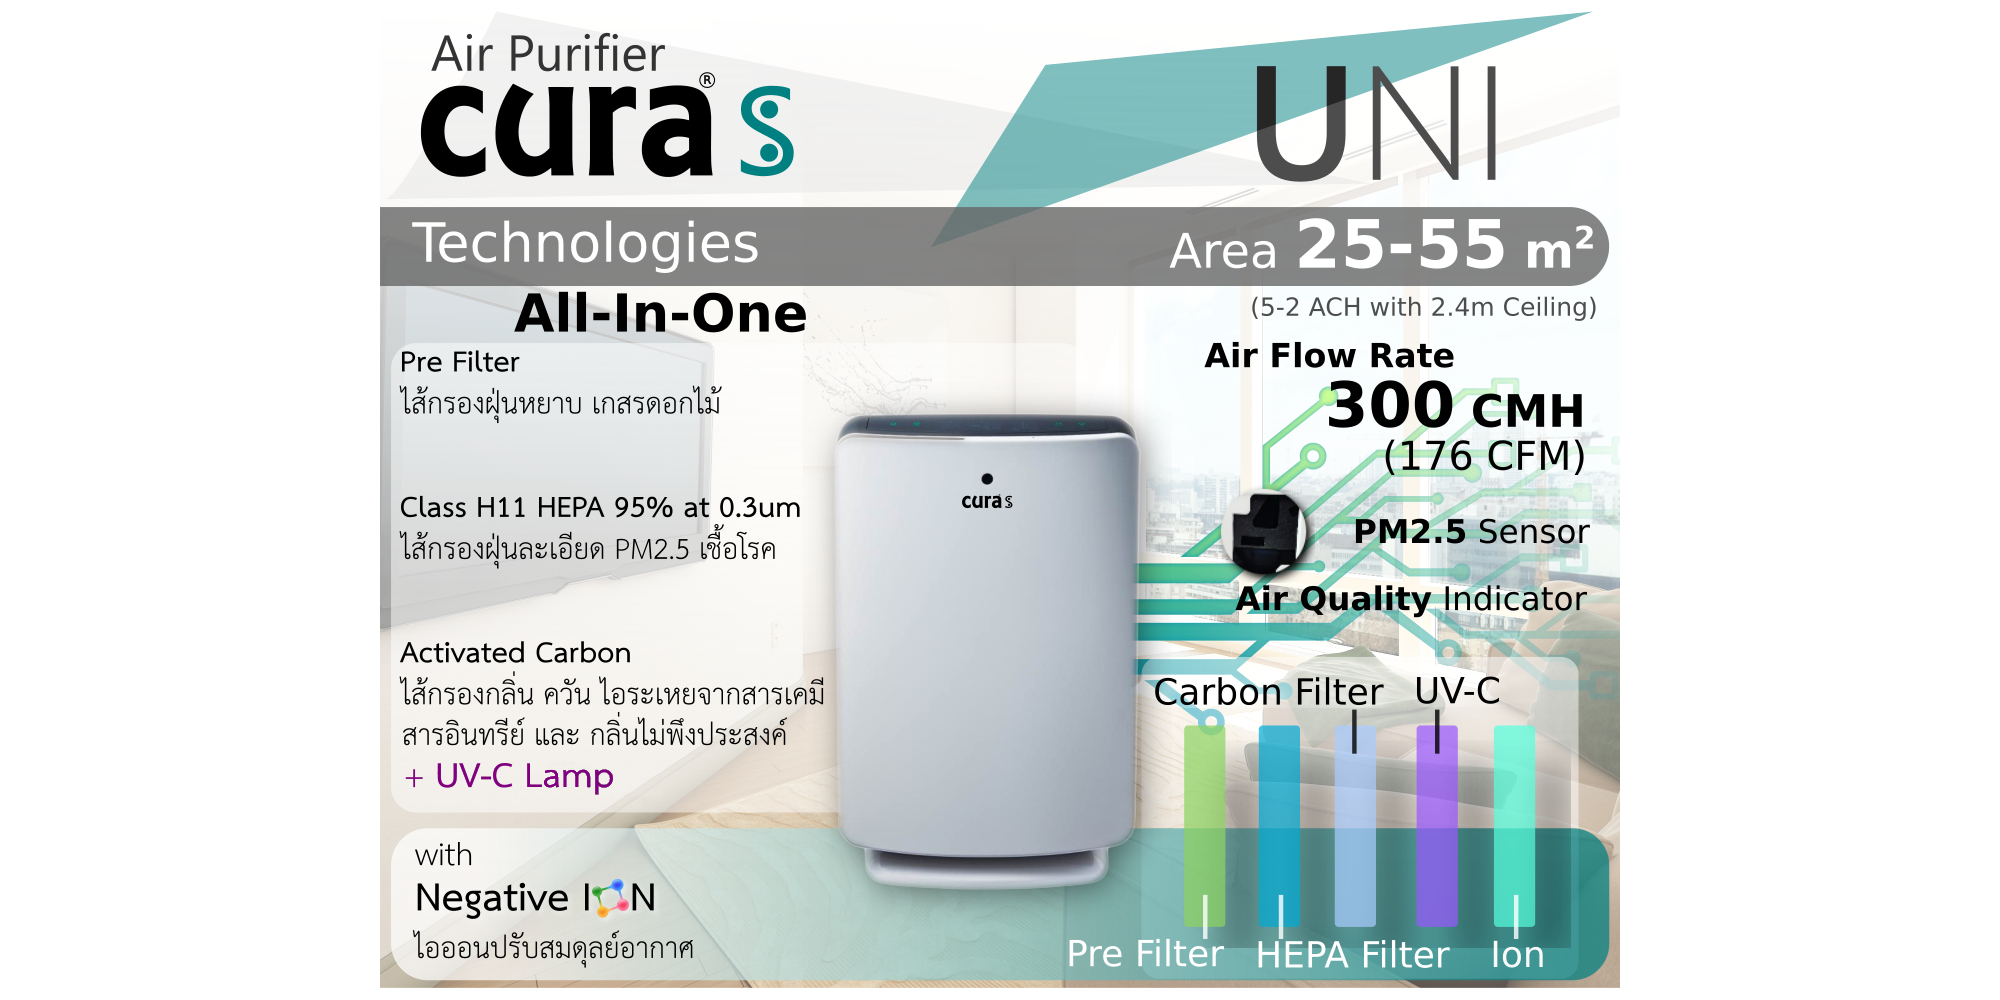 เครื่องฟอกอากาศ กรองกำจัดฝุ่นด้วย ระบบ Pre-Filter และ HEPA filter และดักจับกลิ่นด้วย Activated Carbon ยี่ห้อ CURA Life CURA S รุ่น UNI สามารถดักจับฝุ่นละเอียดระดับ PM 2.5 ได้